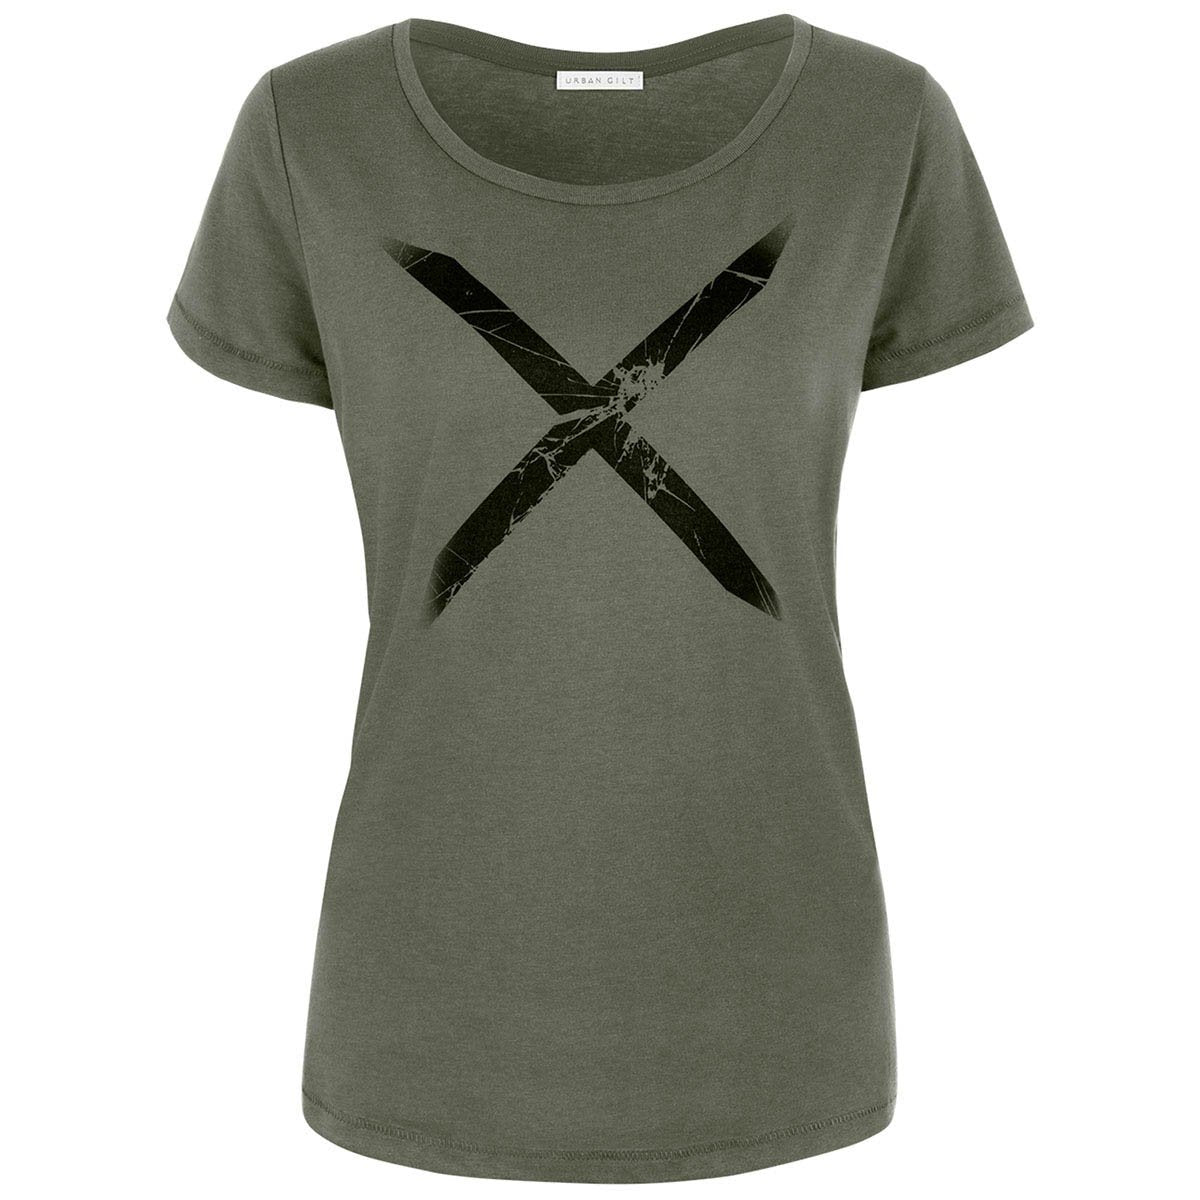 Ridley Khaki Chic Minimalist Style X T-shirt Front View